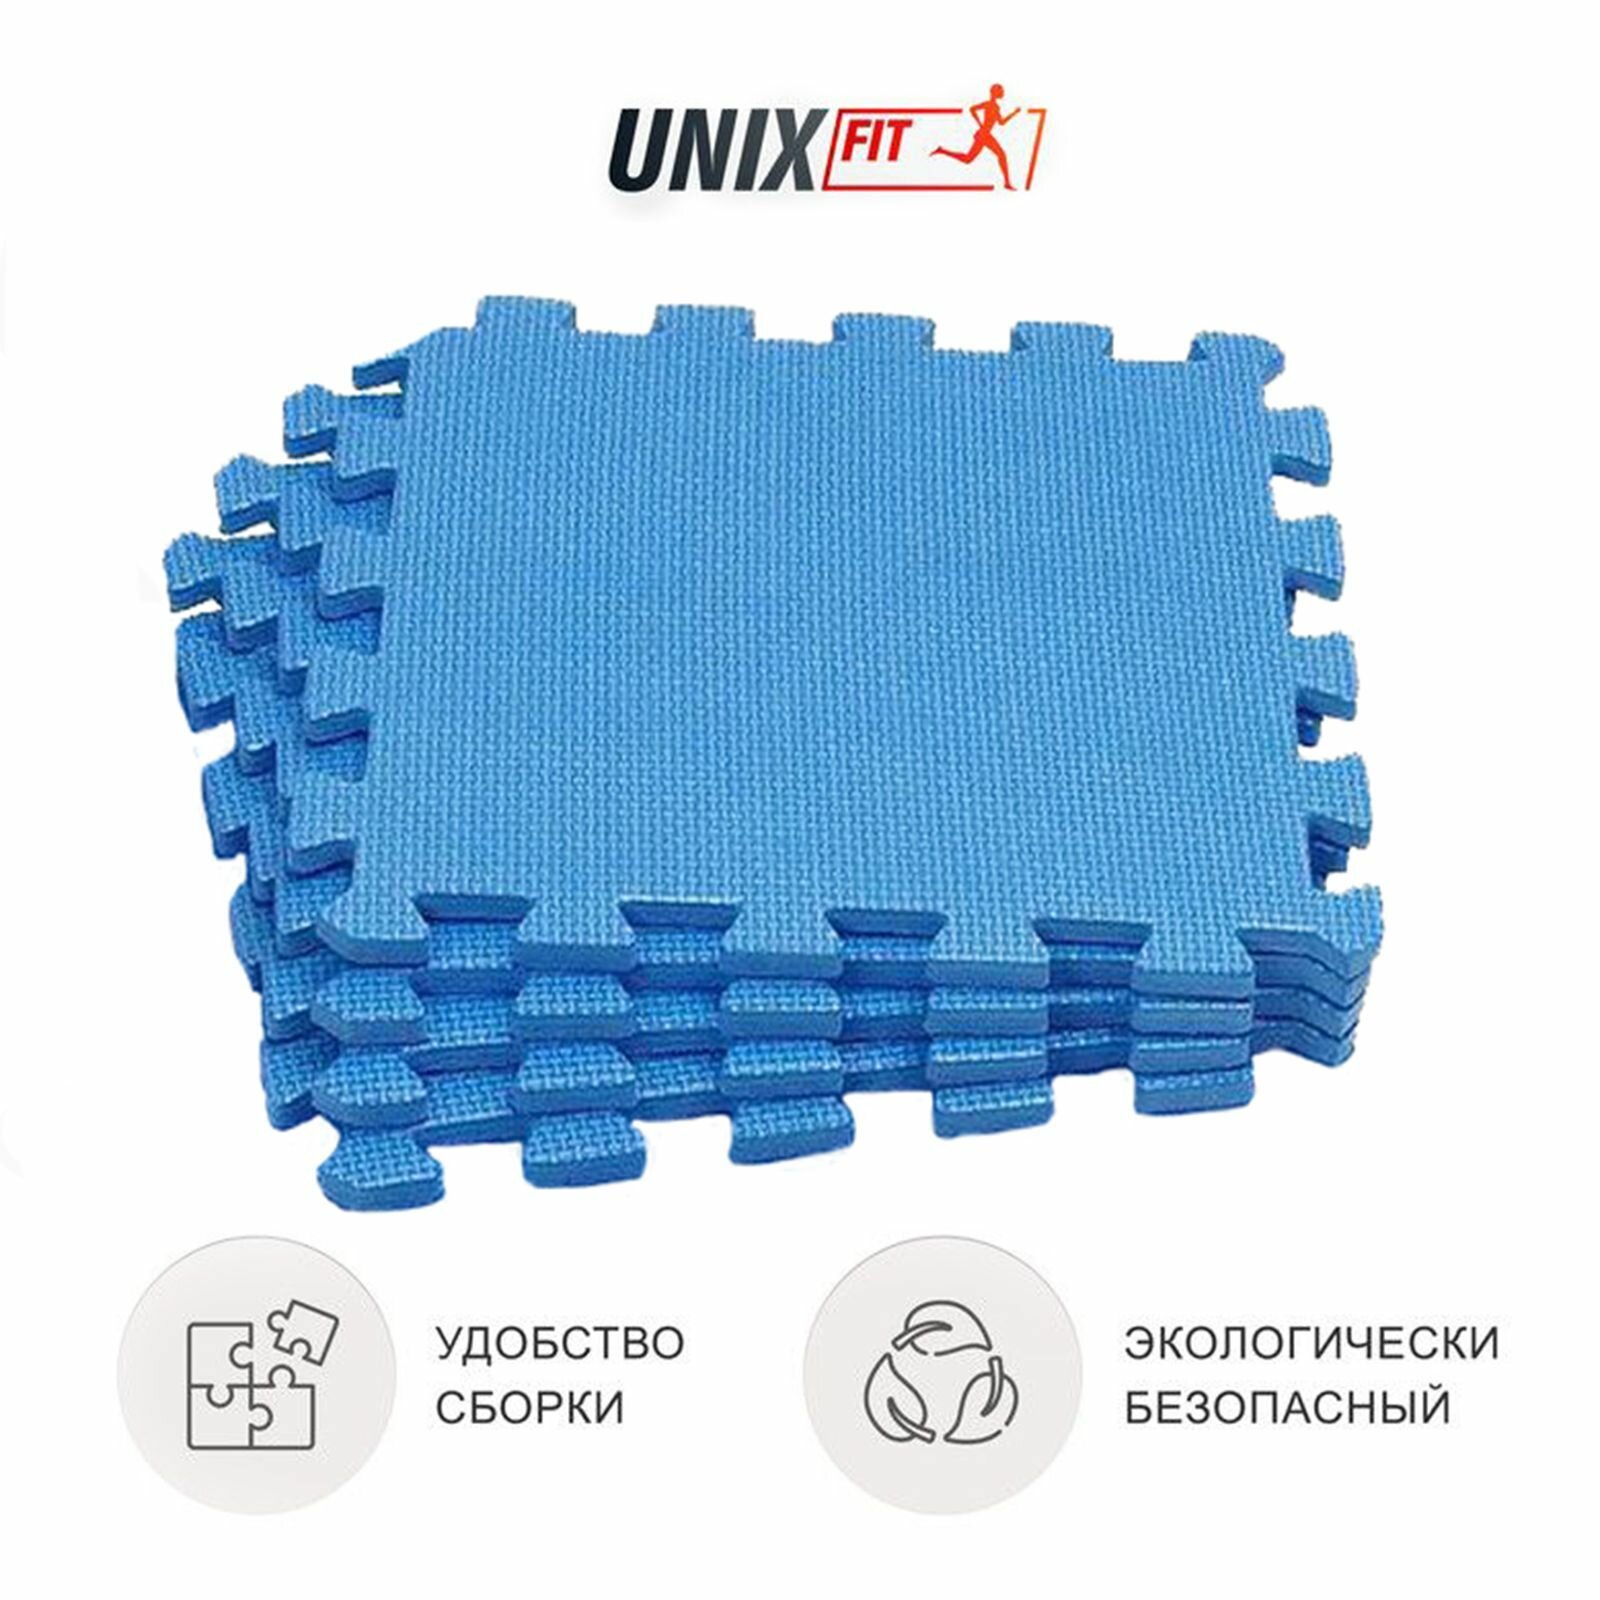 Коврик-пазл UNIX Fit влагостойкий, большие мягкие модули спортивные, детский коврик, 30 х 30 х 1 см, синий, 4 шт. UNIXFIT